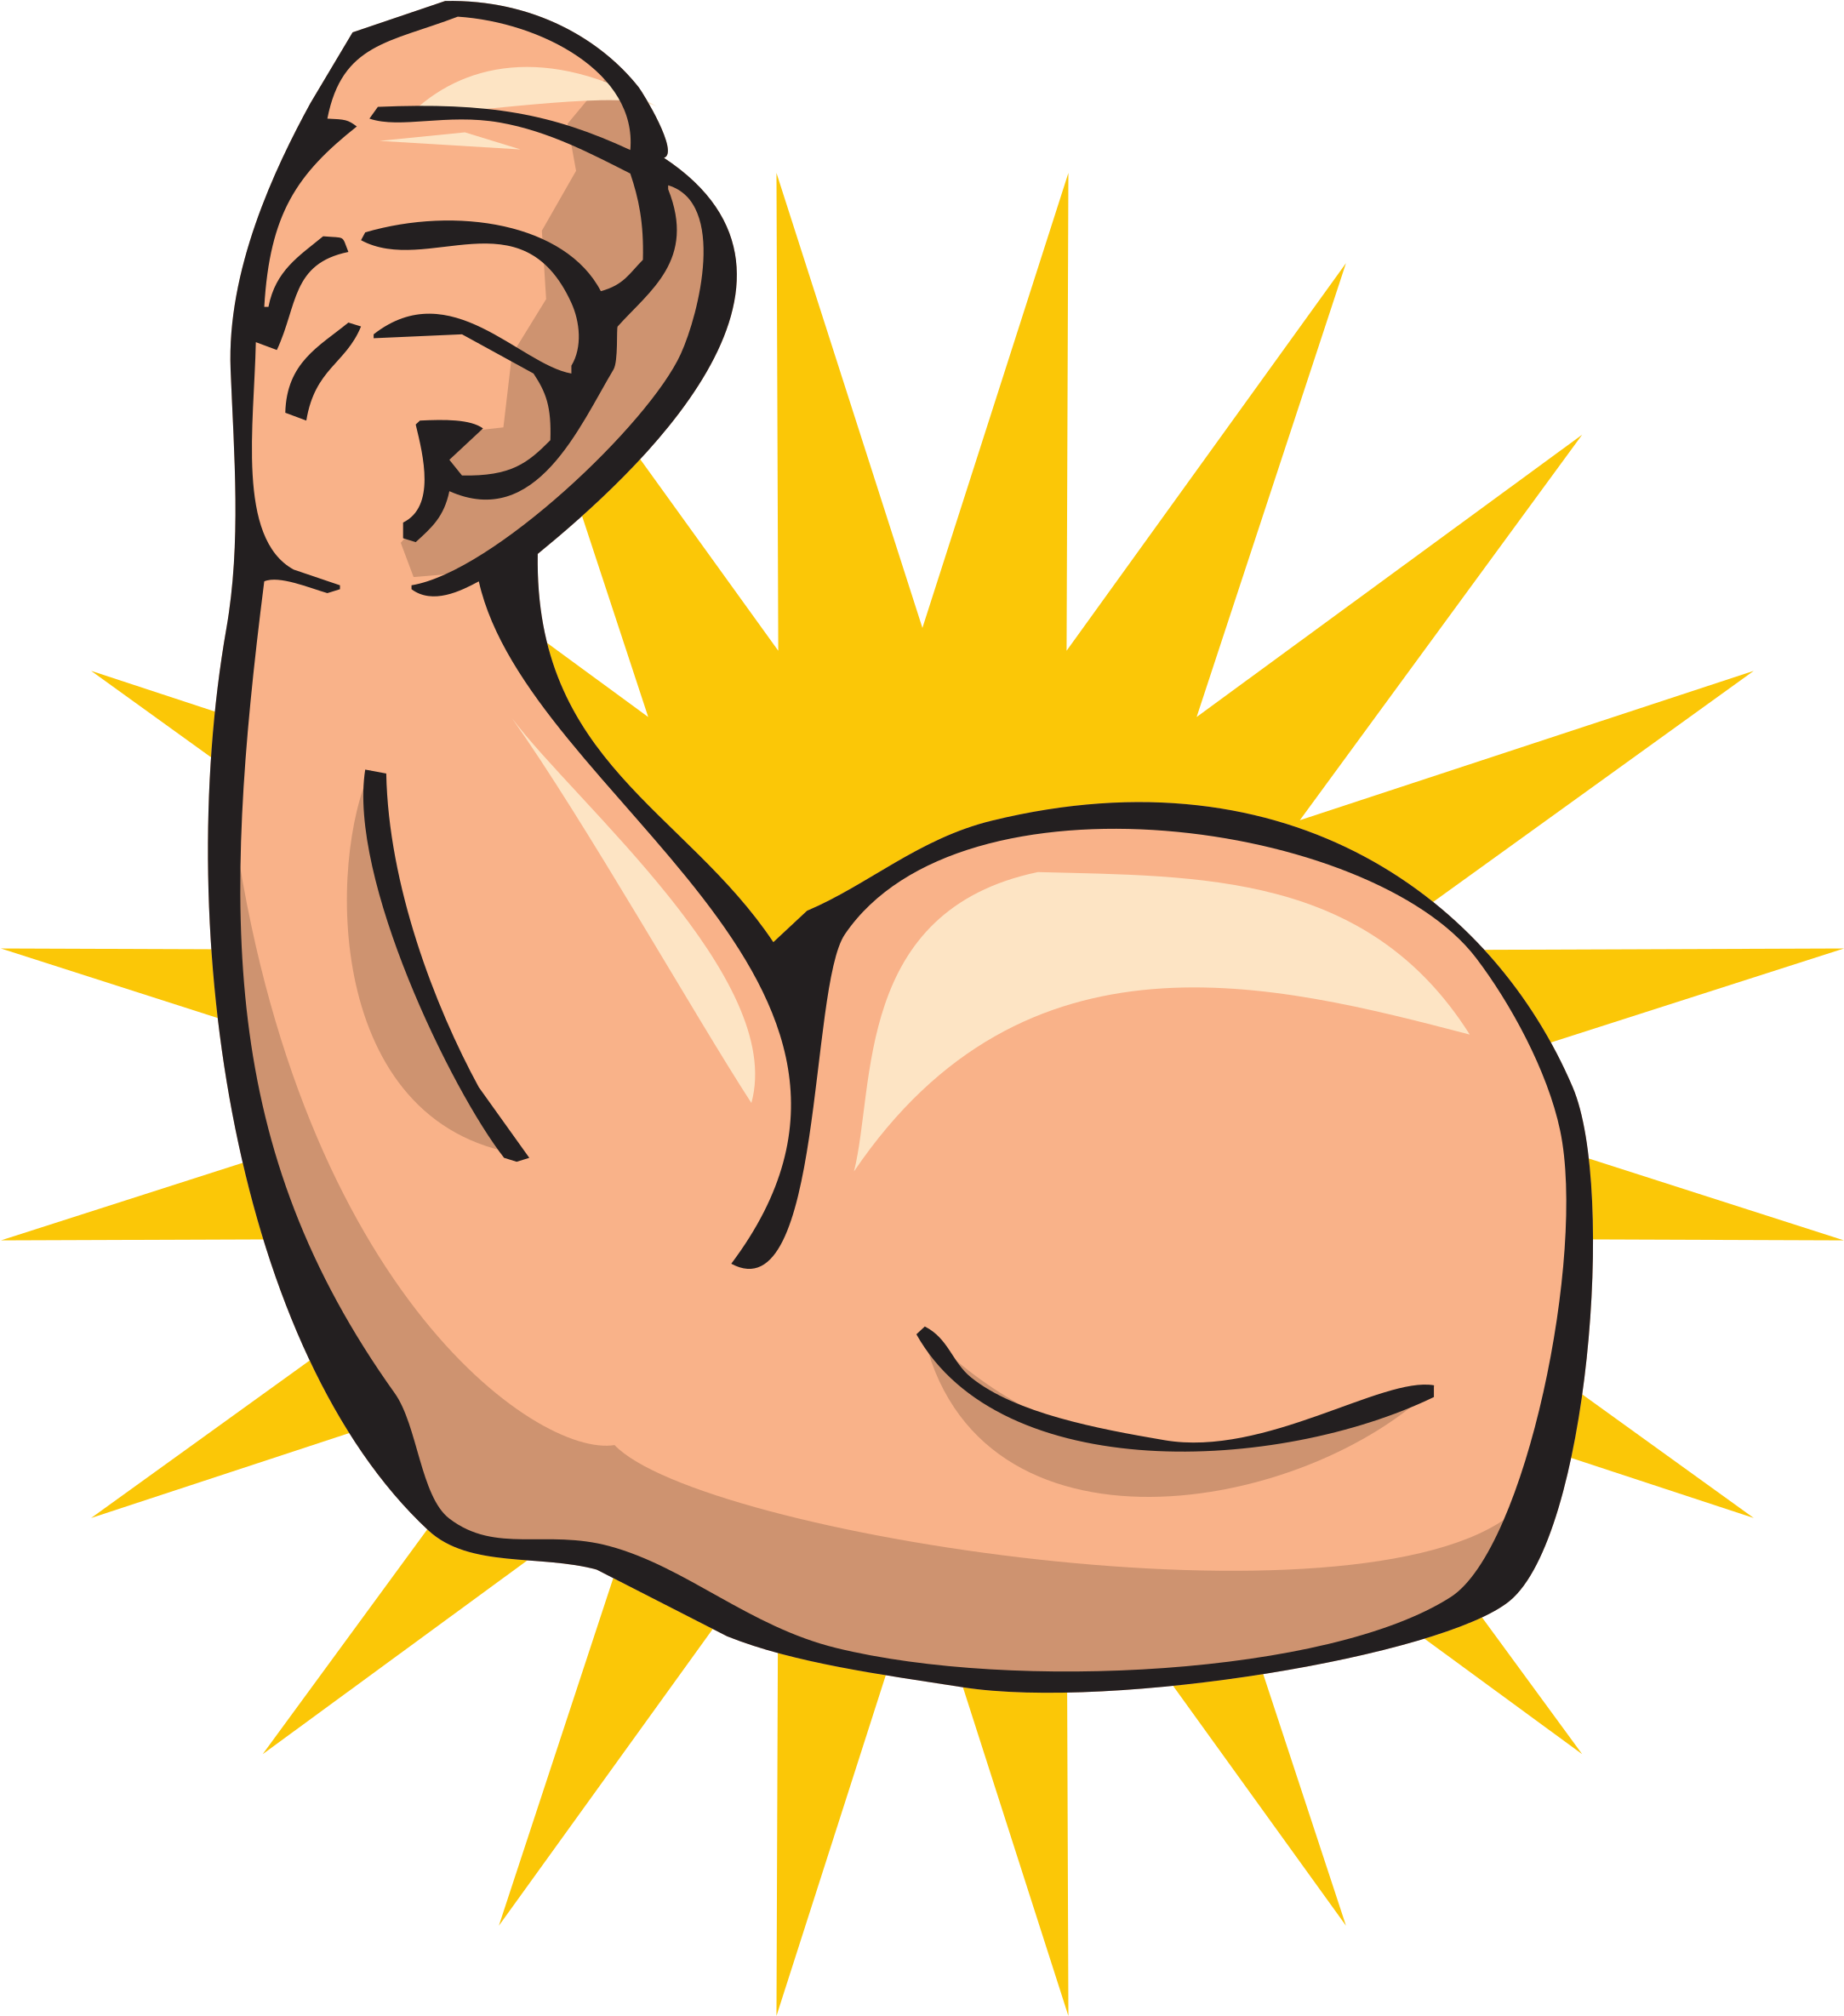 A Cartoon Of A Muscular Arm